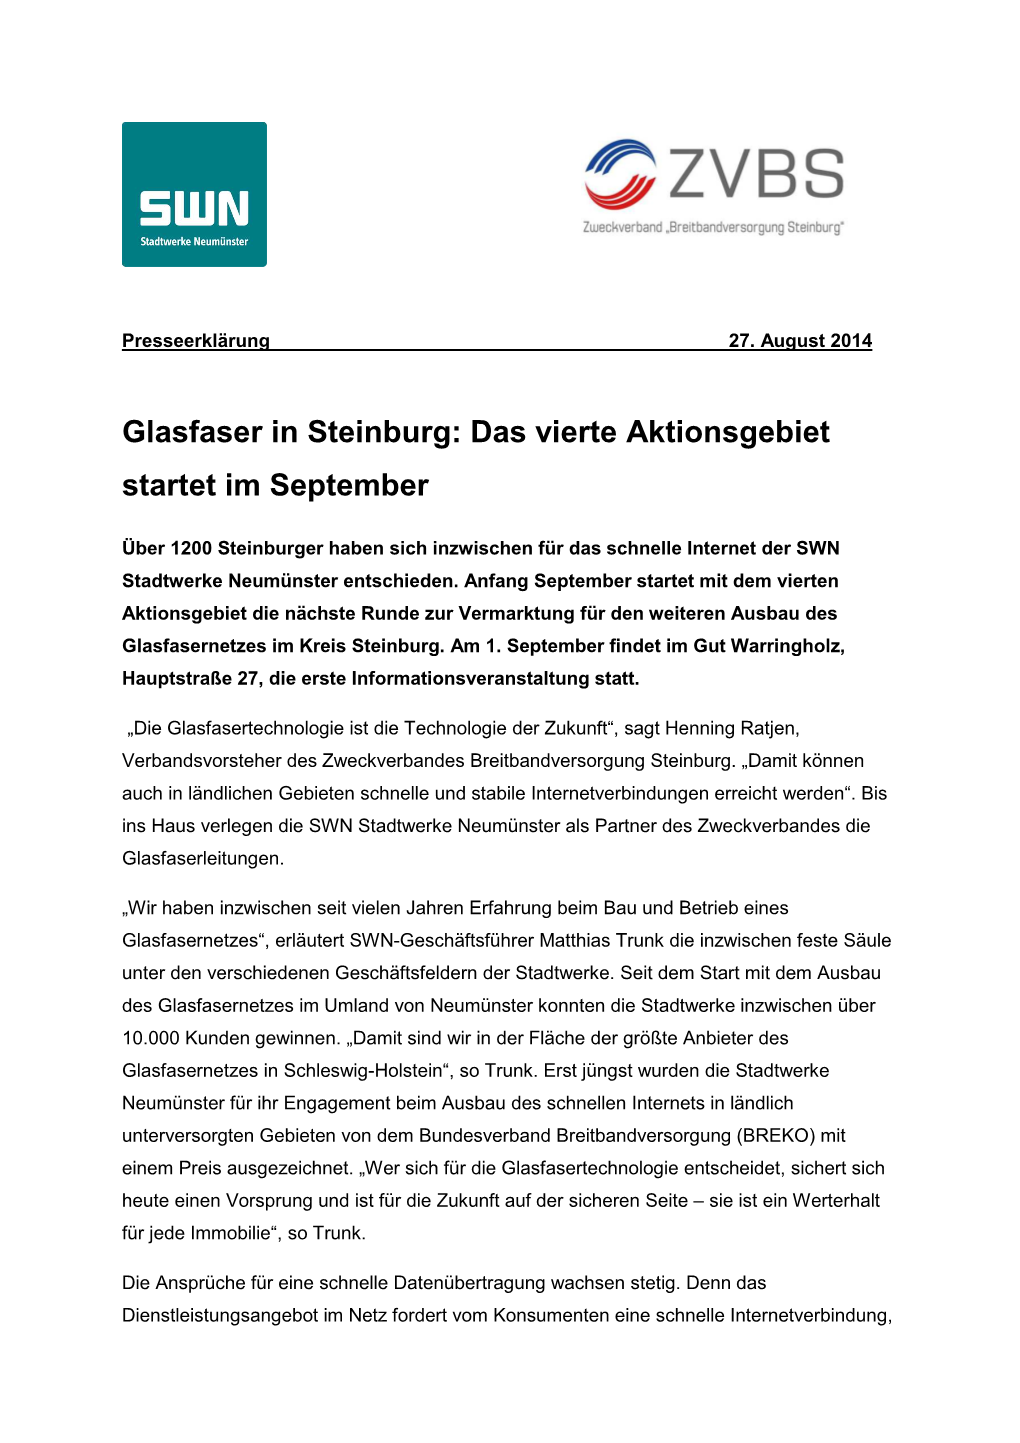 Glasfaser in Steinburg: Das Vierte Aktionsgebiet Startet Im September